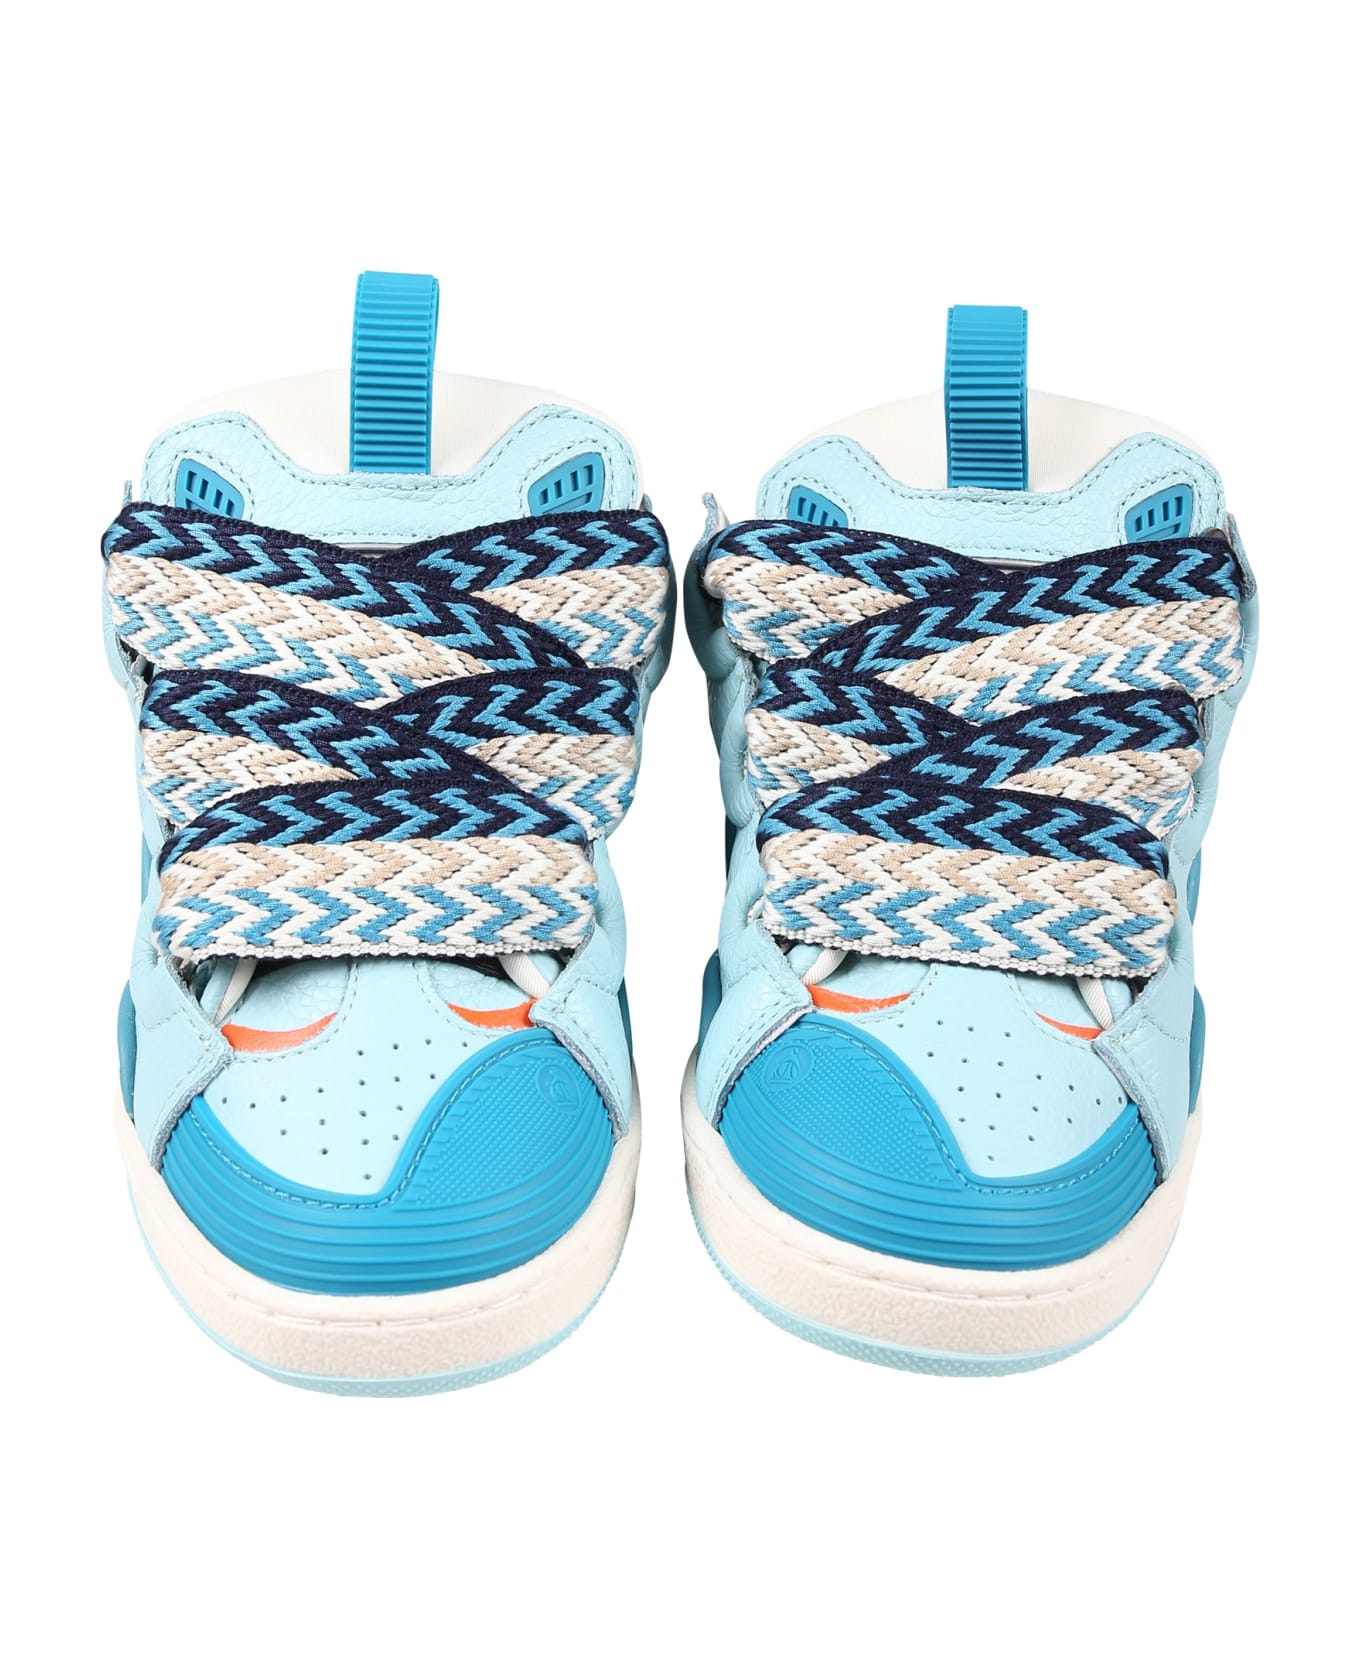 Lanvin Light Blue Sneakers For Boy - Blu